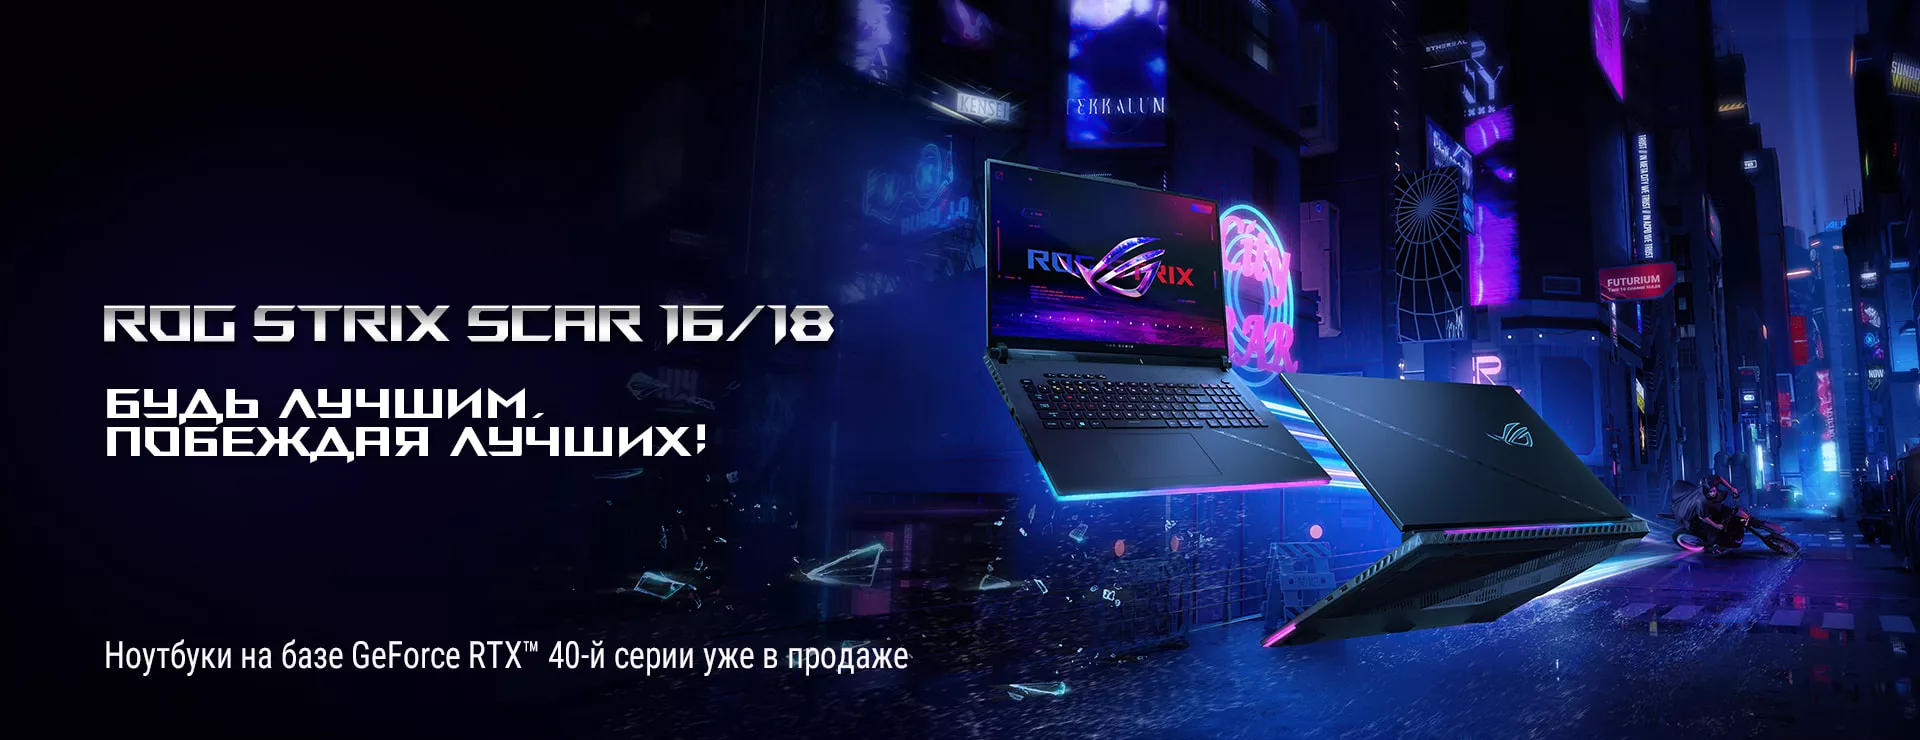 Игровые ноутбуки ROG STRIX SCAR 16/18 и ROG Strix G16/18 с видеокартами NVIDIA GeForce RTX 40-ой серии уже в продаже!